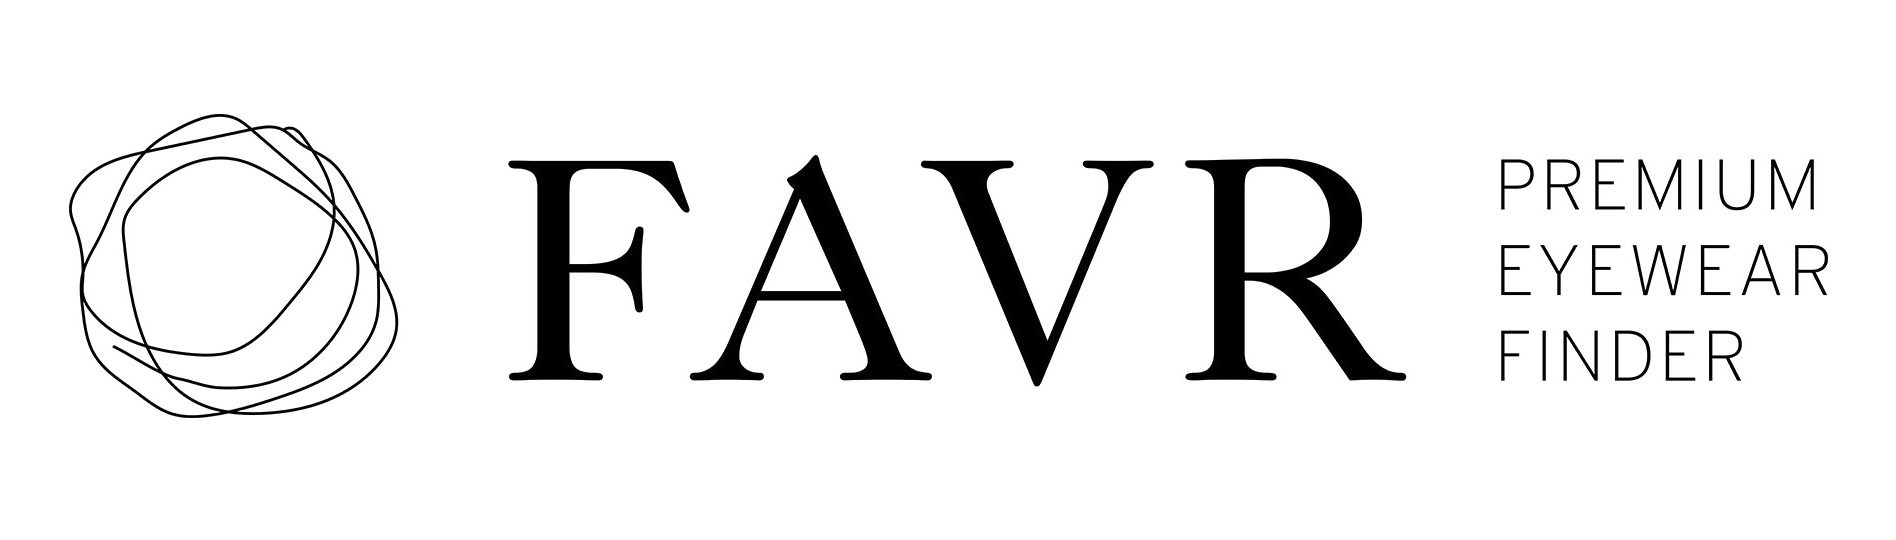 FAVR Logo